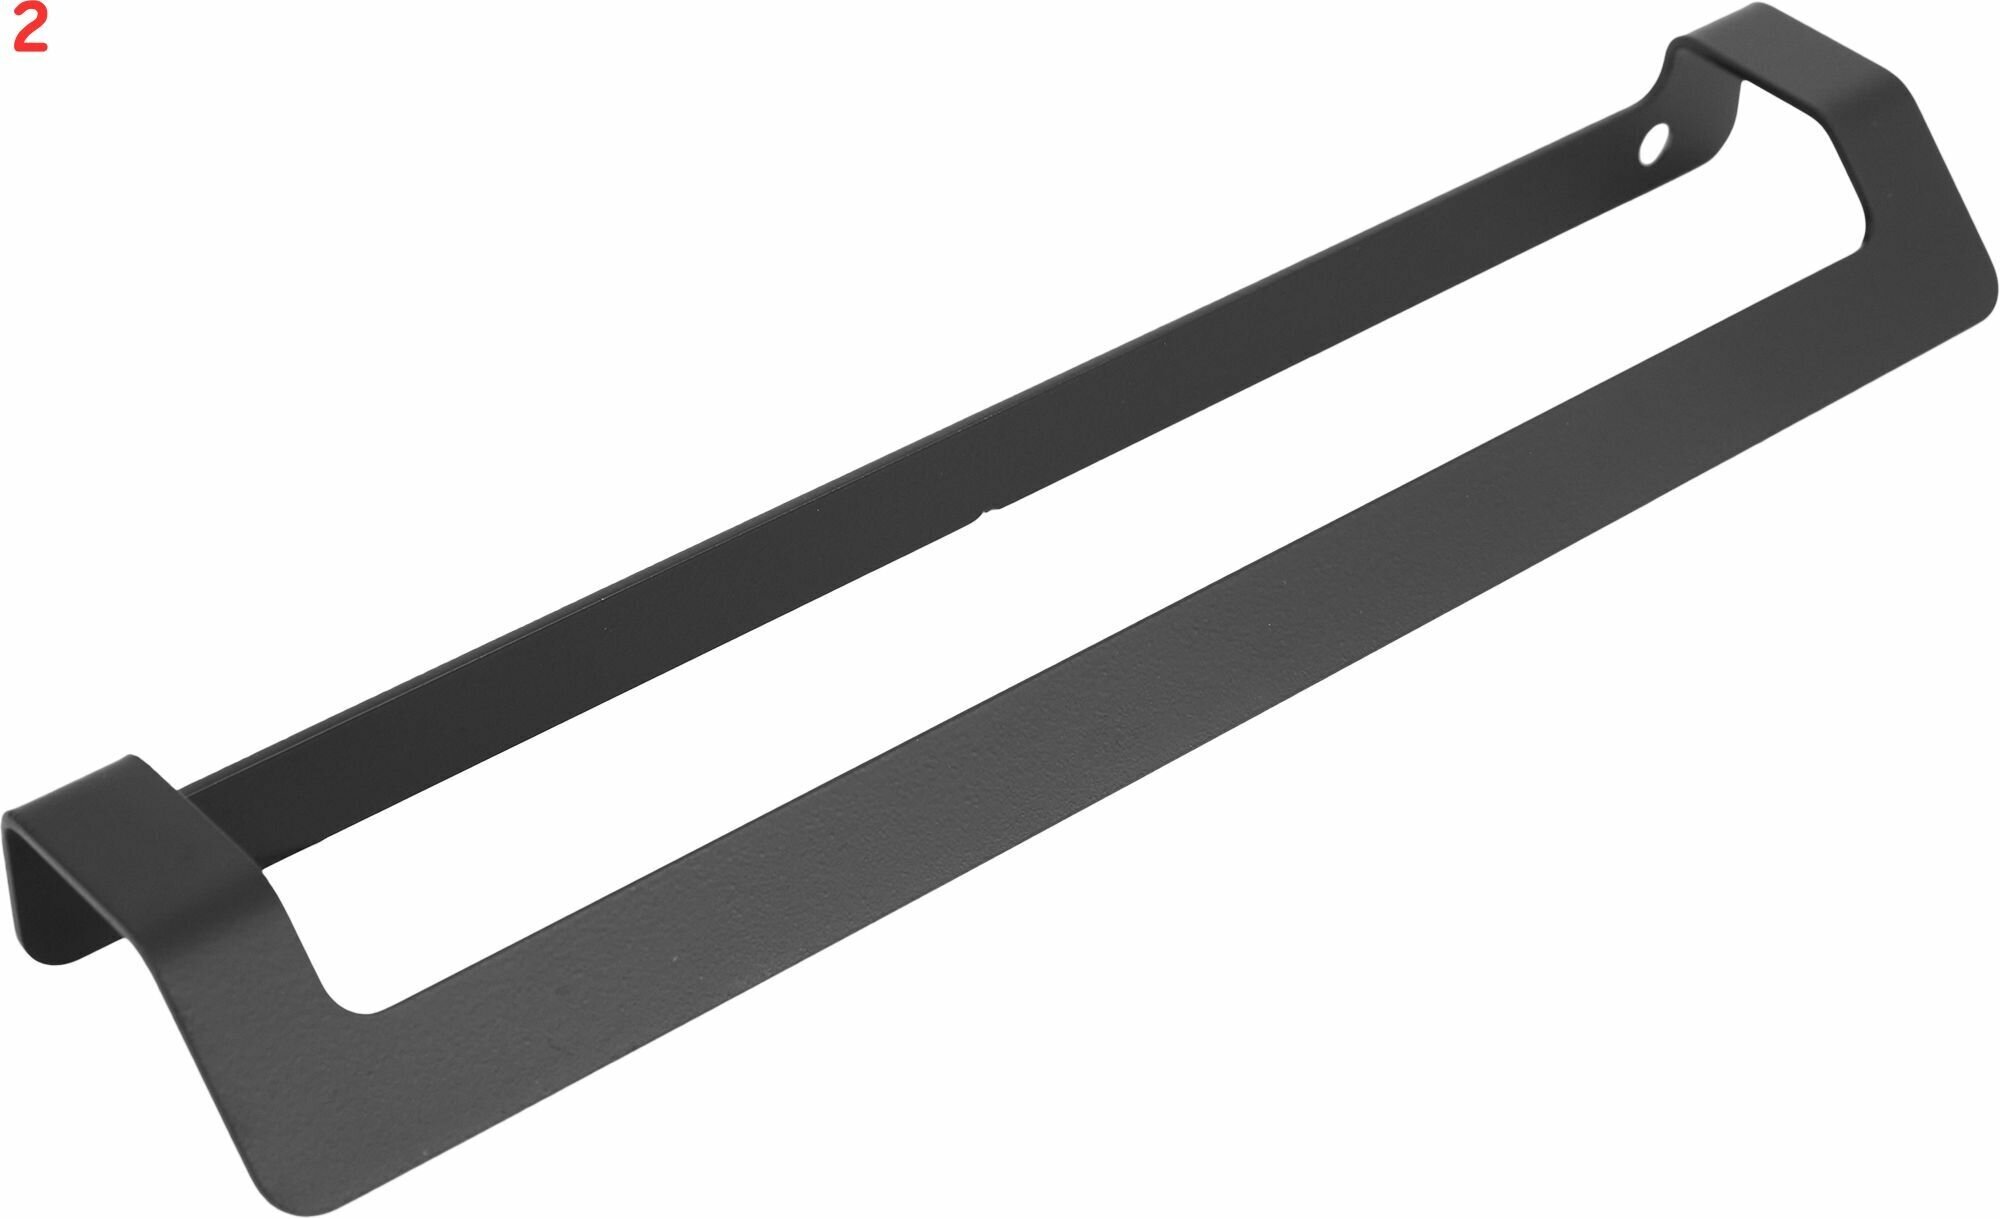 Ручка-профиль CТ3 188 мм сталь, цвет черный (2 шт.)